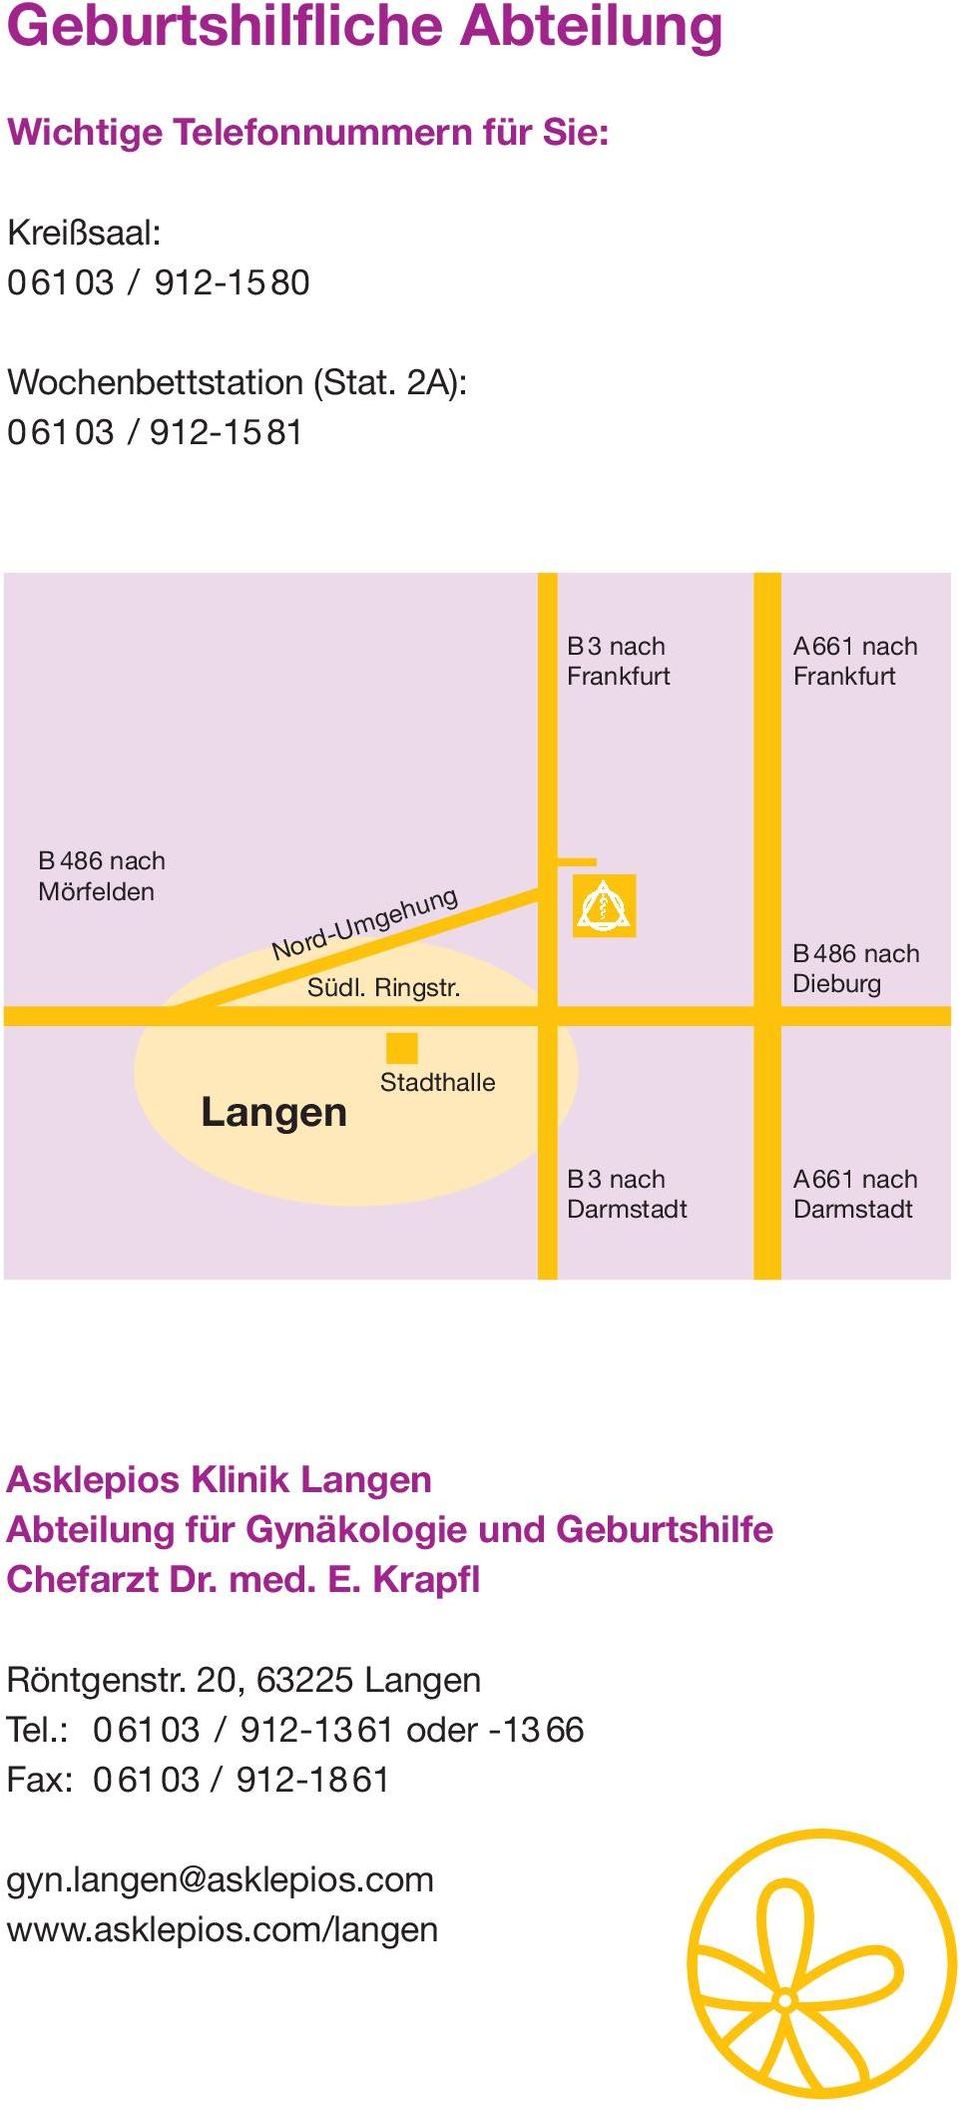 B 486 nach Dieburg Langen Stadthalle B 3 nach Darmstadt A661 nach Darmstadt Asklepios Klinik Langen Abteilung für Gynäkologie und